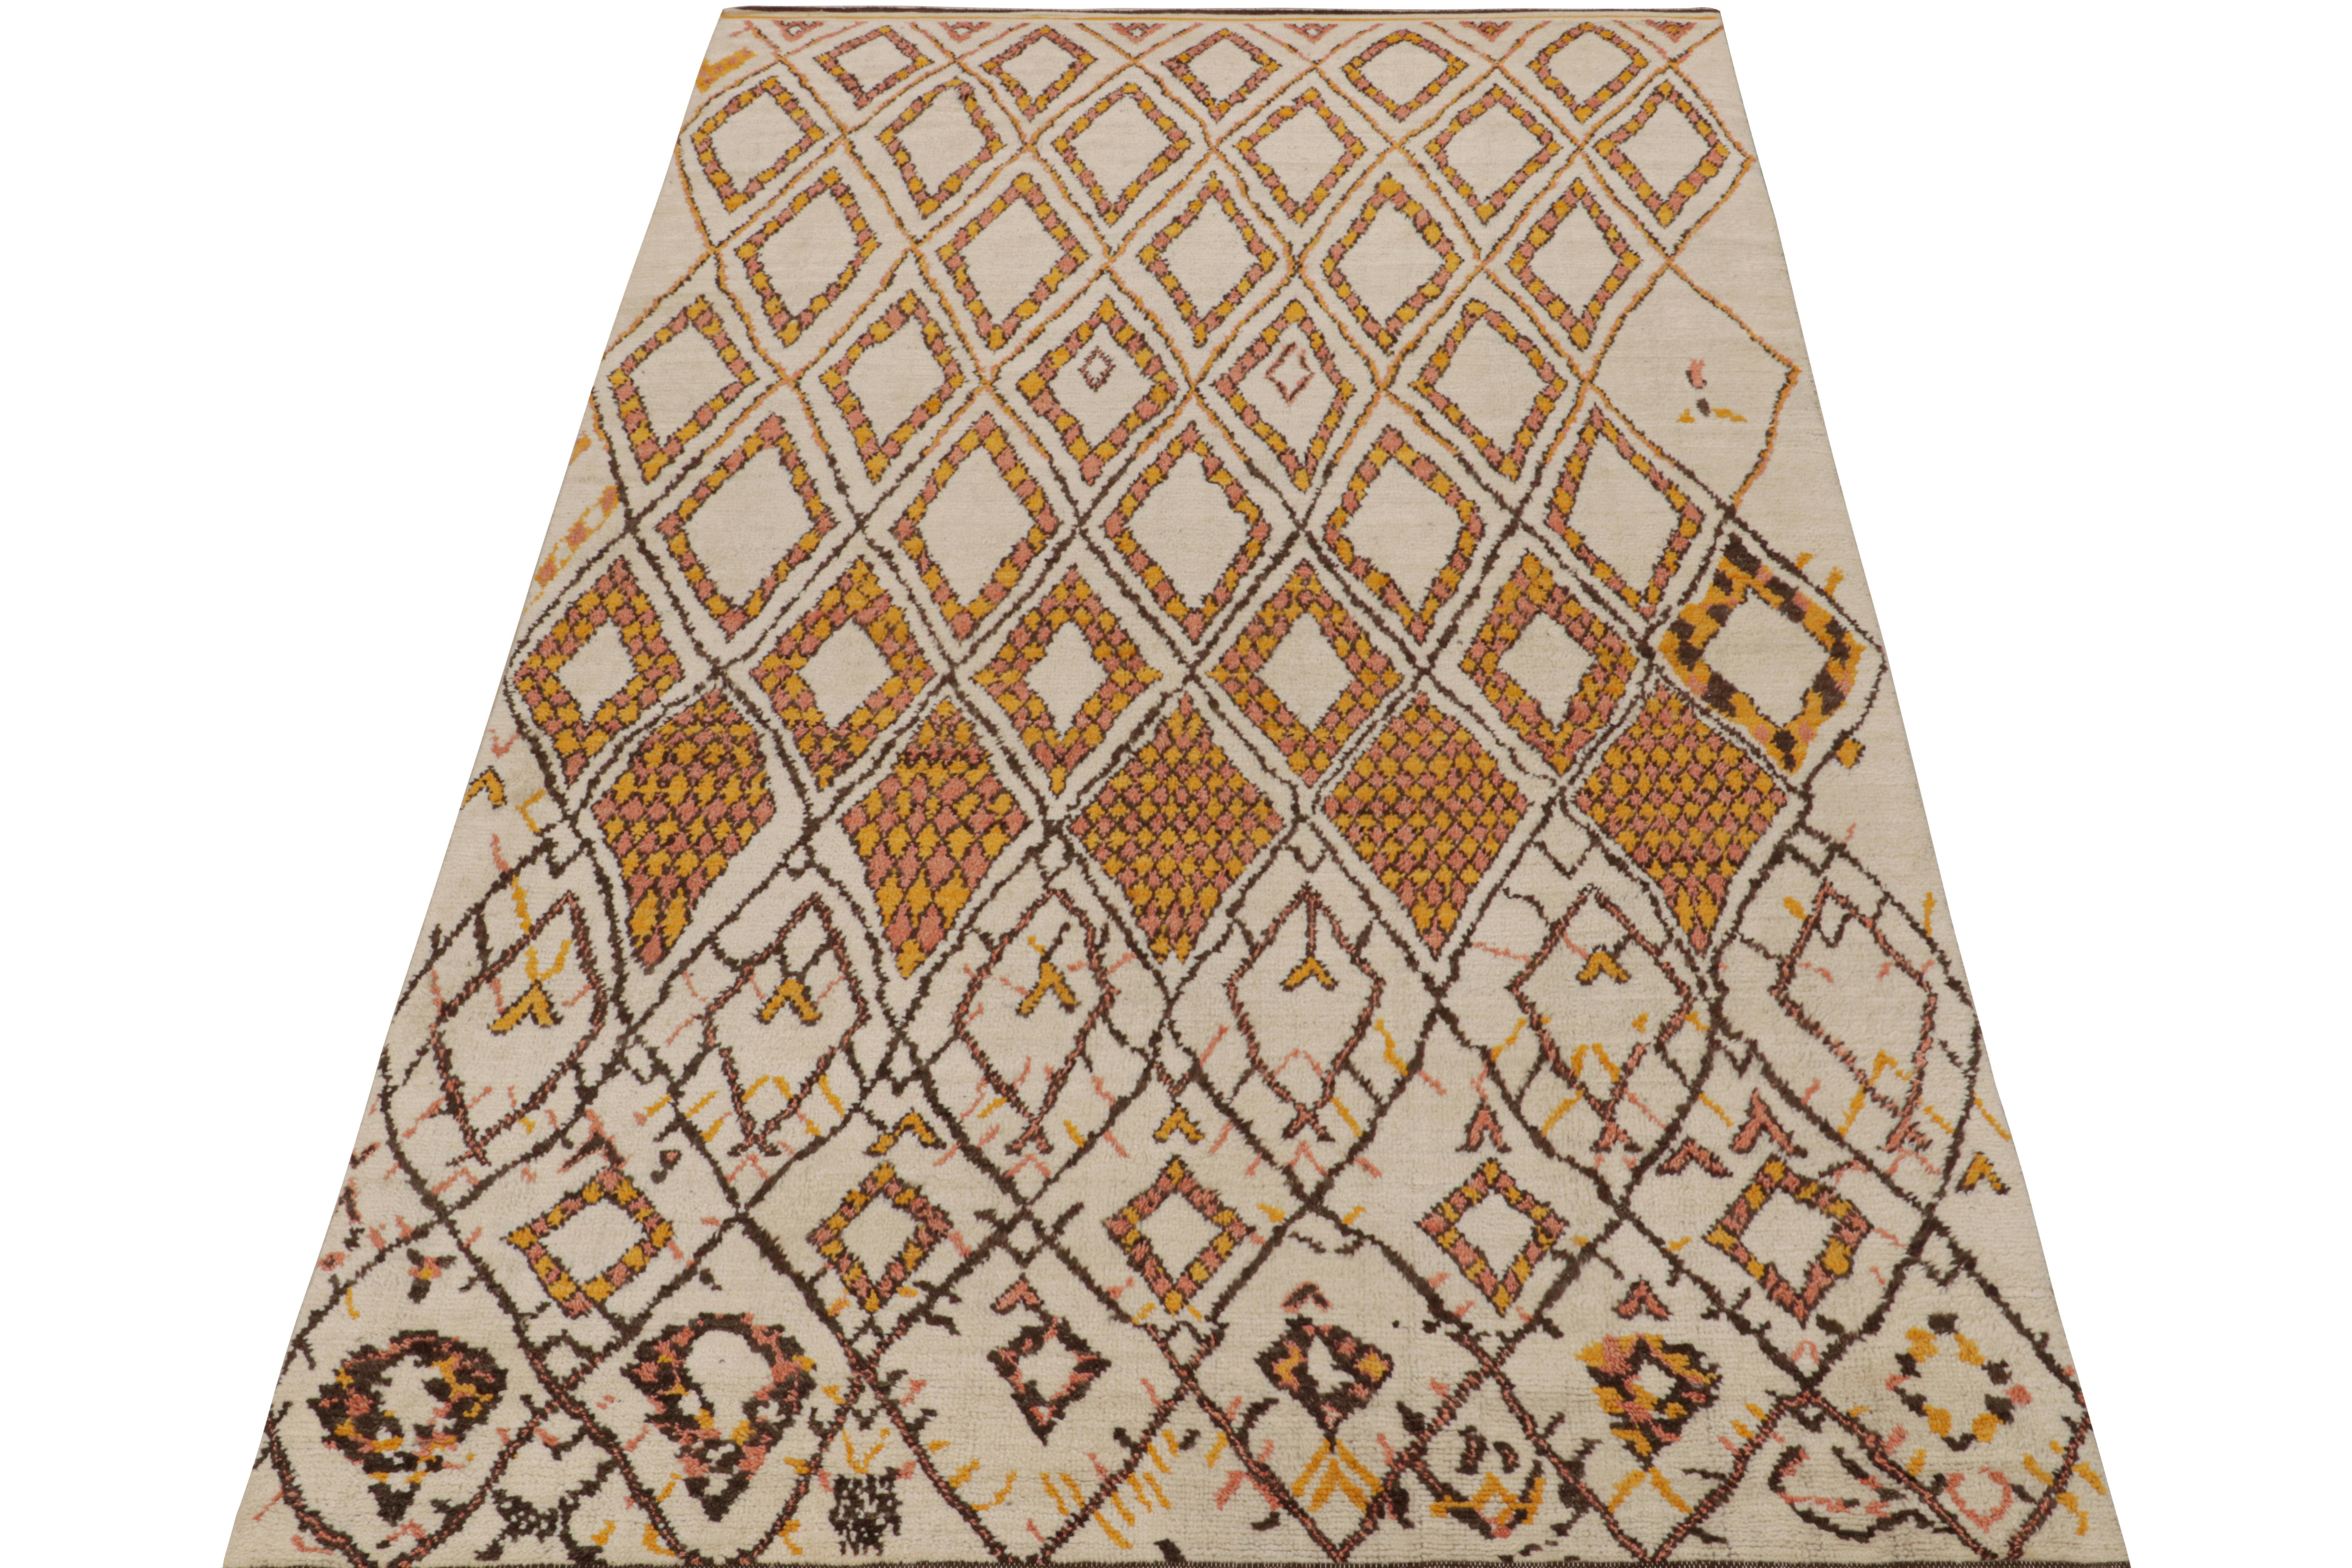 Tribal Rug & Kilim's Moroccan Style Rug in Beige-Brown & Orange Geometric Patterns (tapis de style marocain à motifs géométriques beige, marron et orange) en vente